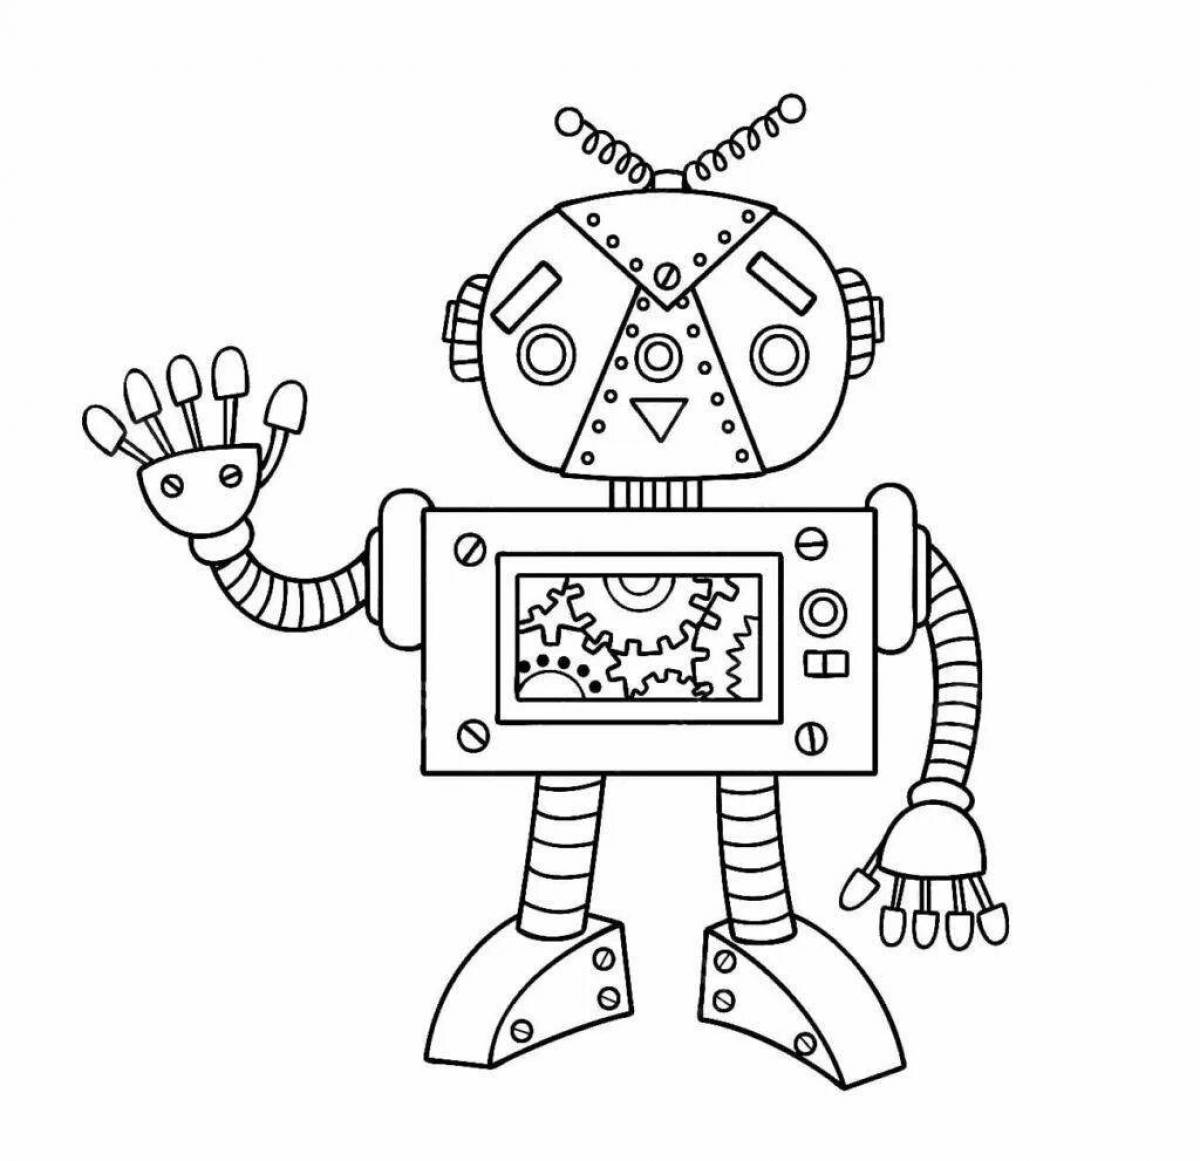 Привлекательная страница-раскраска робота-учителя